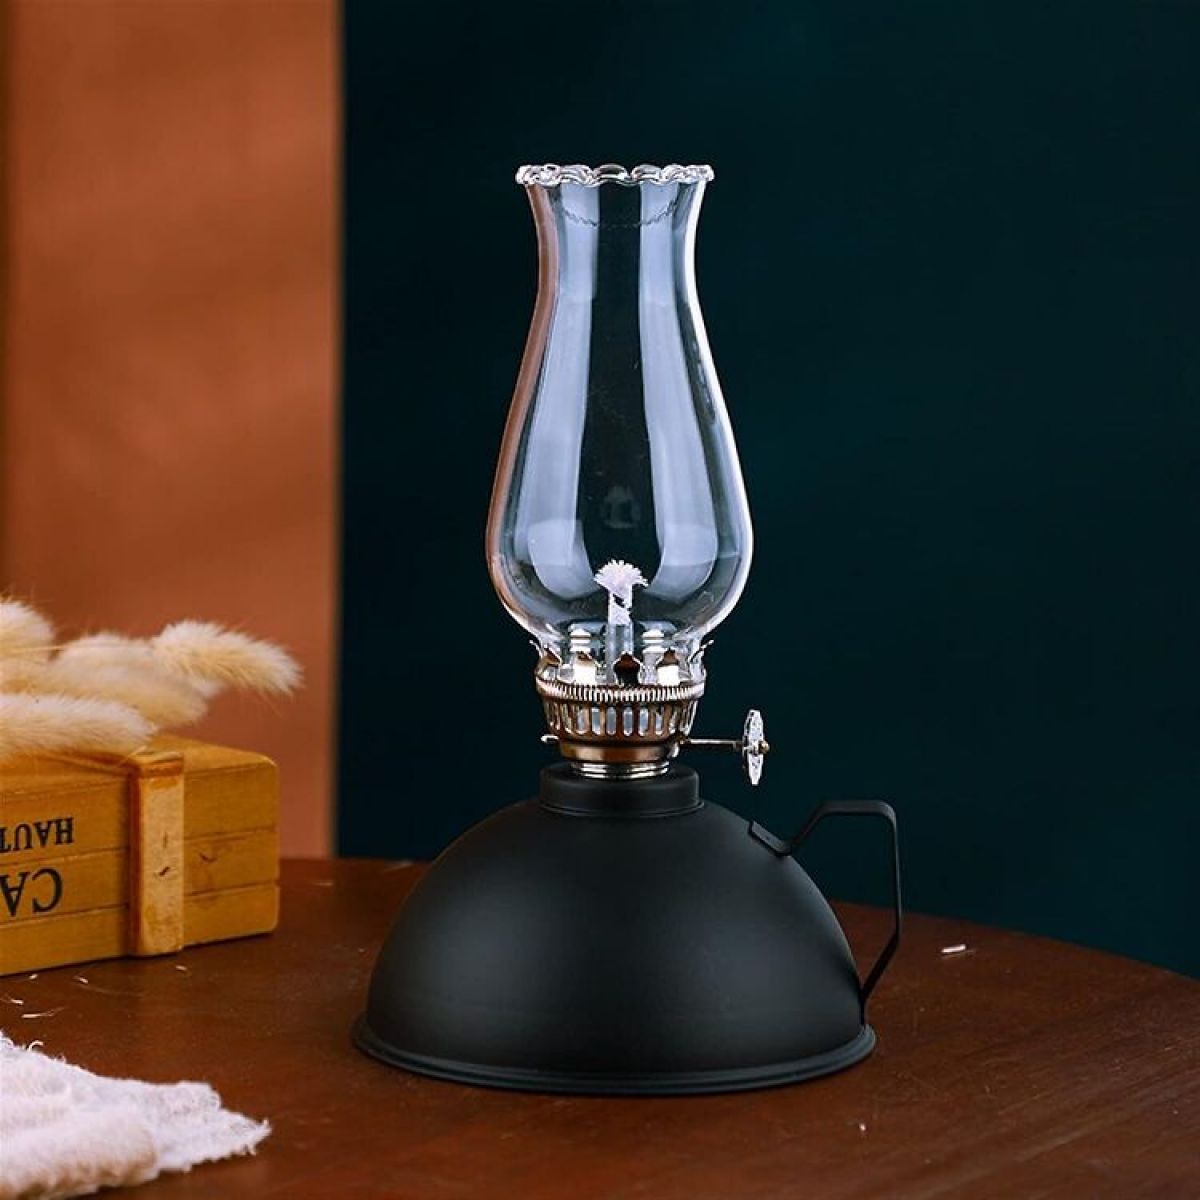 Amanigo Matte oiled lamp retro lamp, antique candle, black